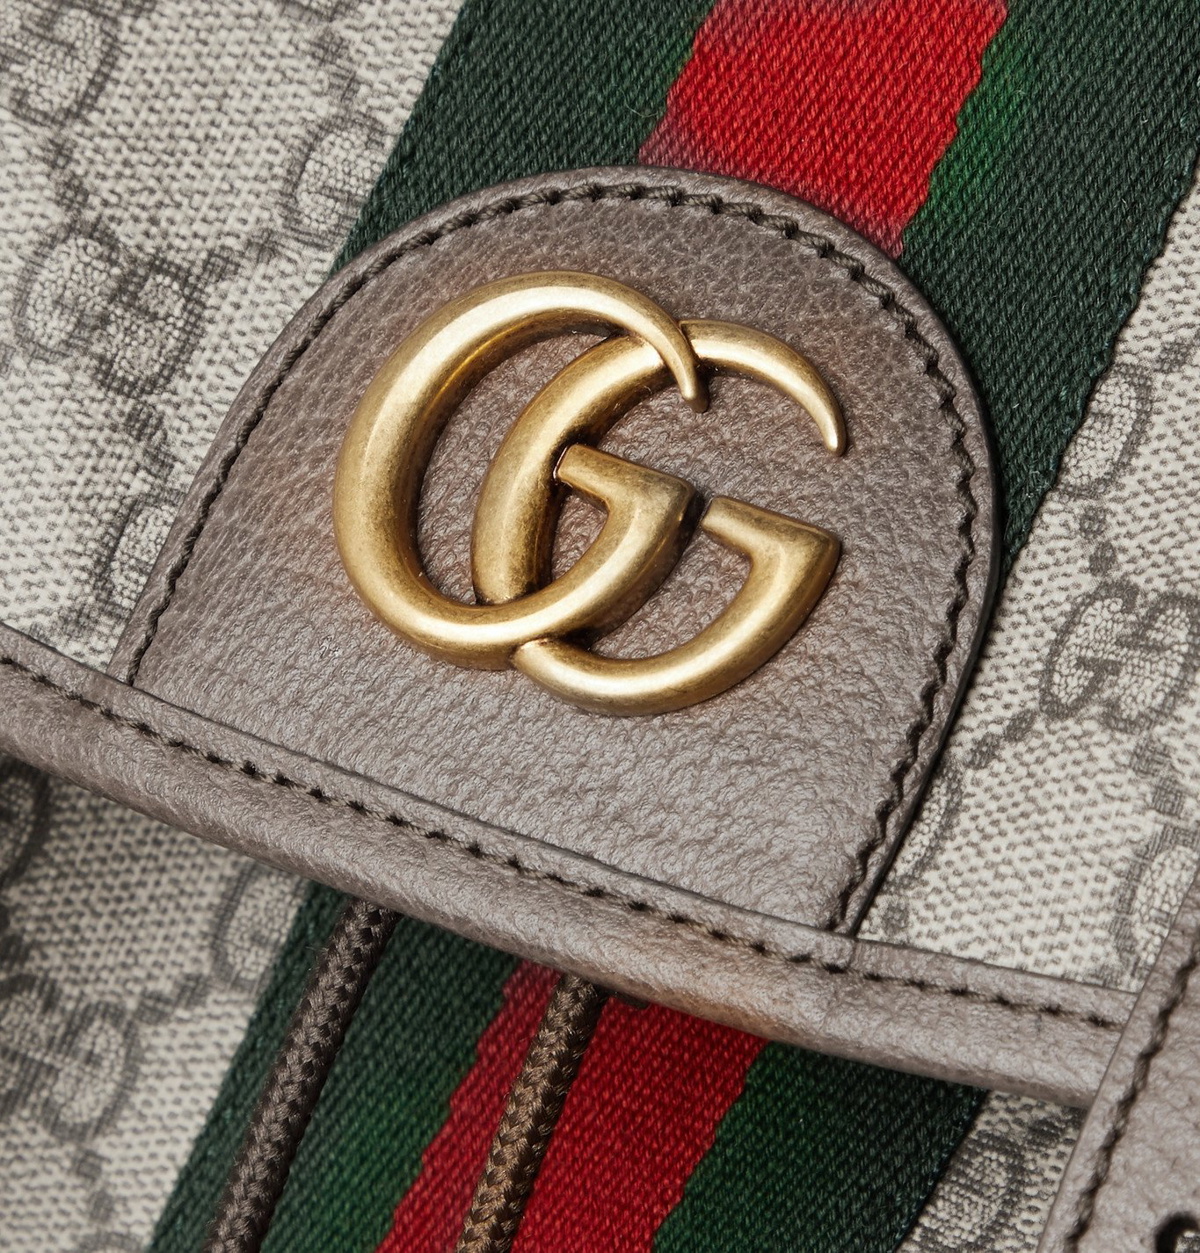 Gucci - Leather-Trimmed Monogrammed Coated-Canvas Messenger Bag - Men -  Brown for Men